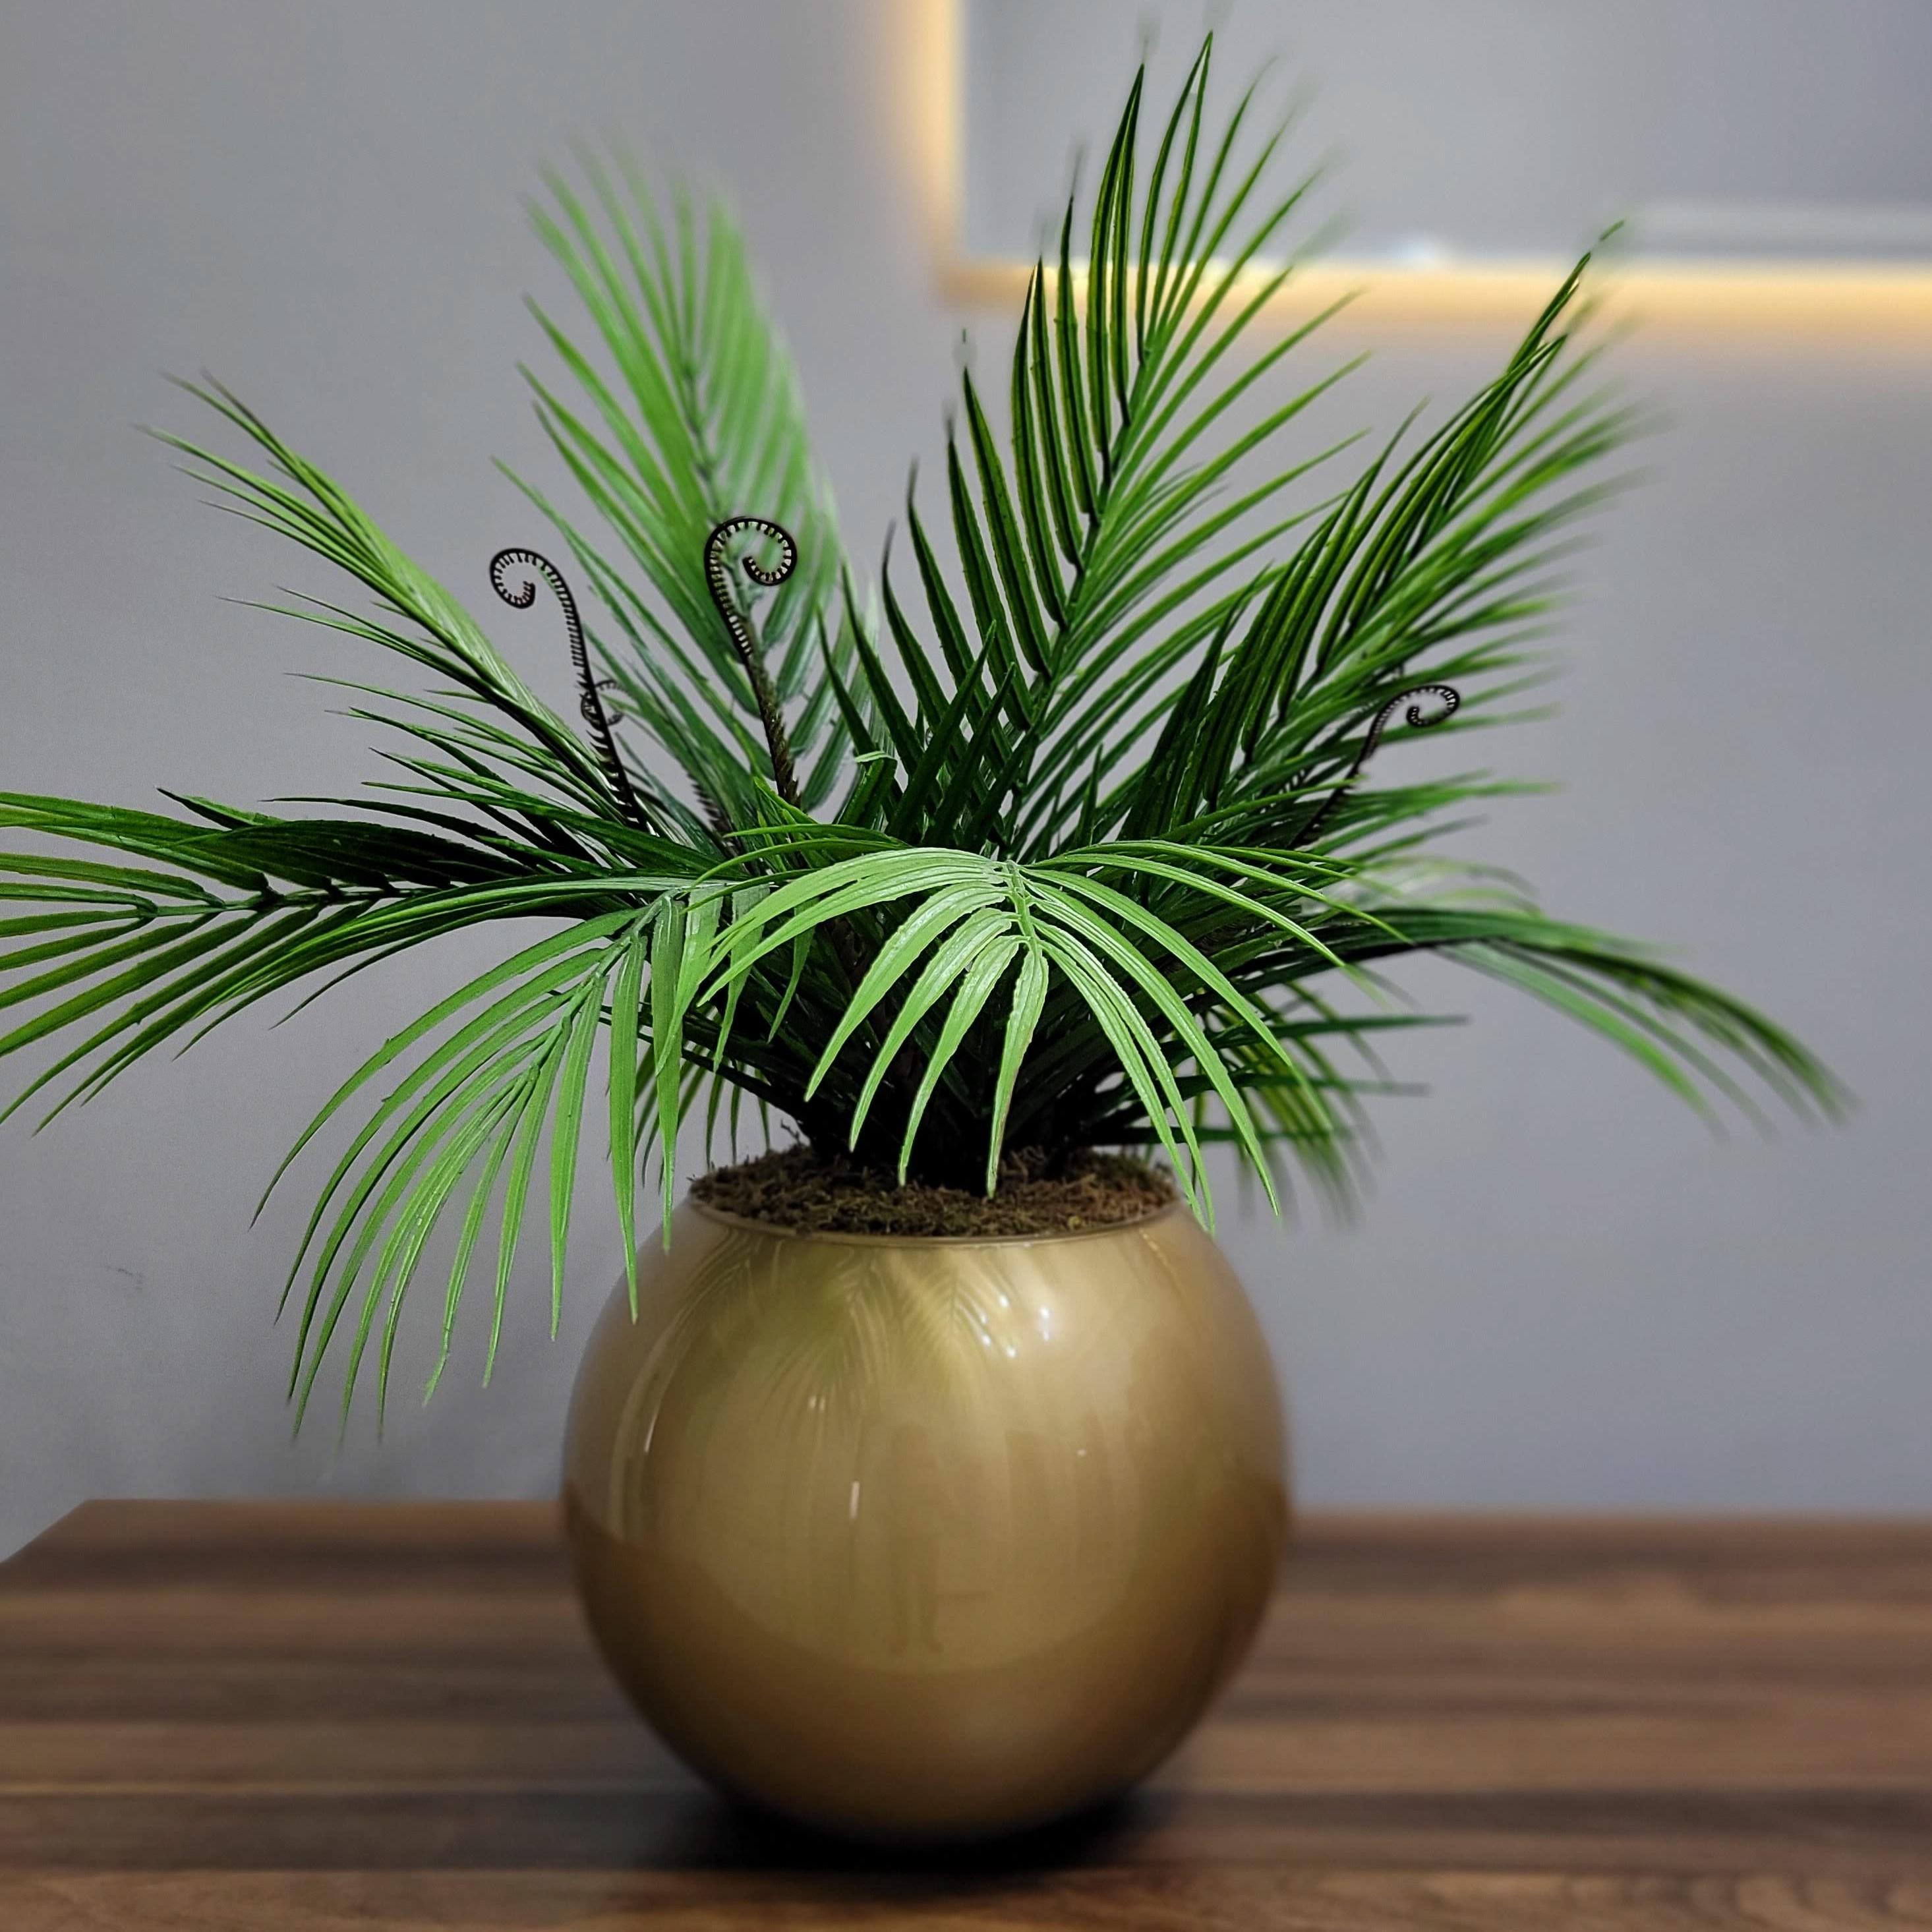 Vazoda Yapay Çiçek Dekorasyon Masaüstü Gold Cam Vazoda Yeşil Palmiye Yaprakları Dekoratif Mimari Tasarım